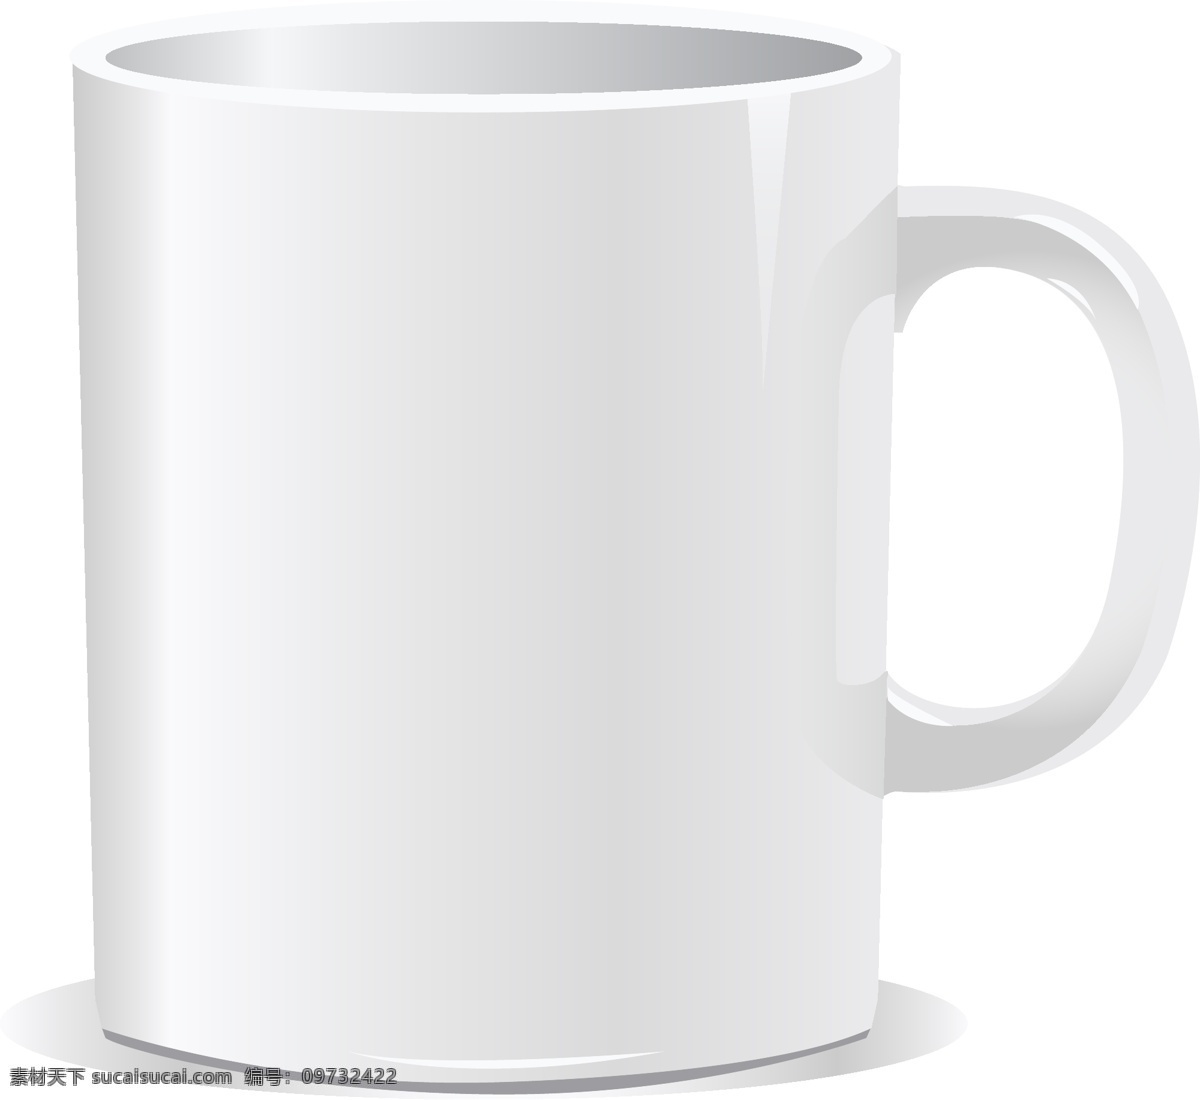 白色 陶瓷 咖啡杯 逼真 模板 设计稿 水杯 素材元素 陶瓷杯 质感 源文件 矢量图